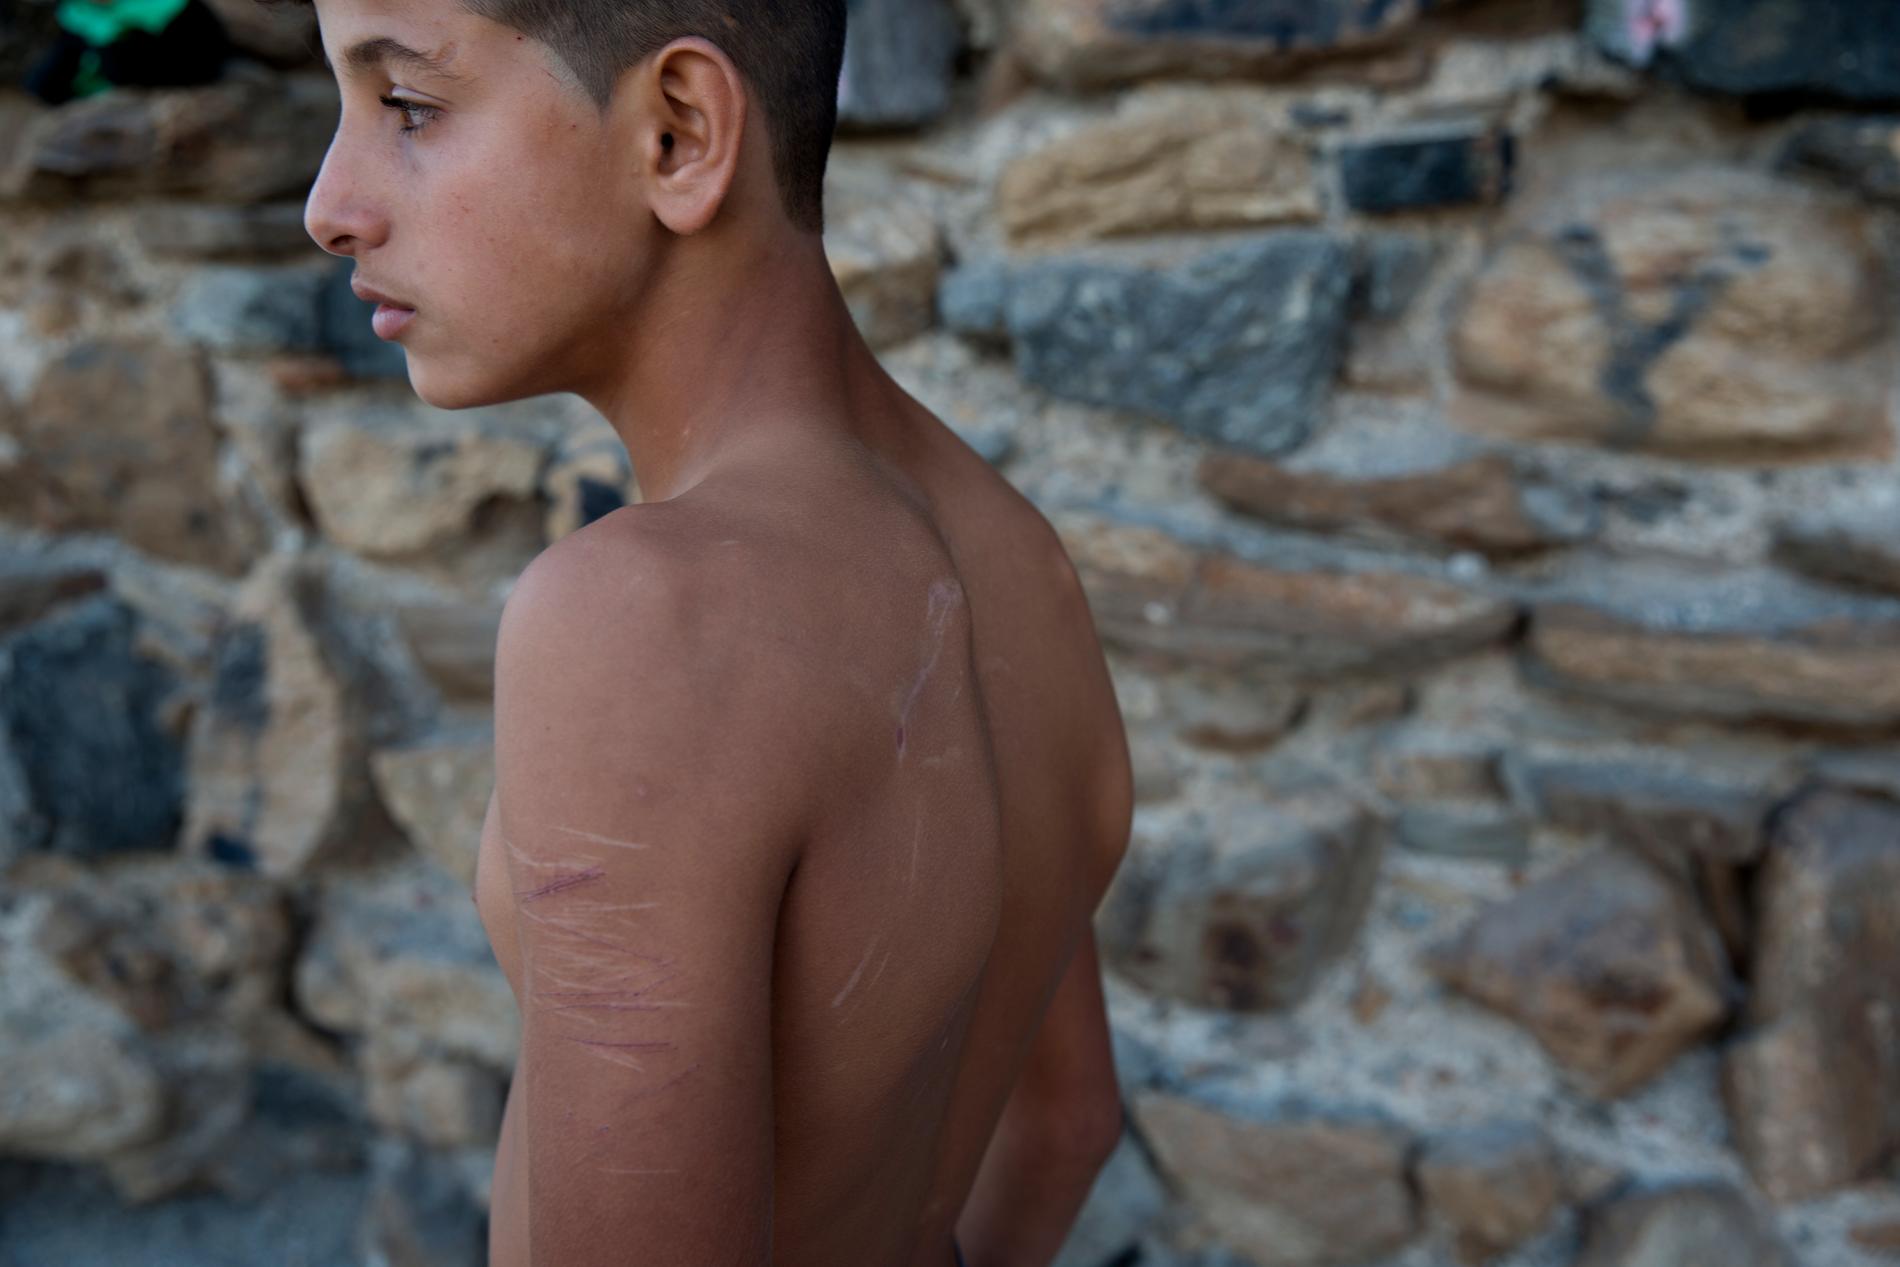 Gatubarn i Marocko som försöker att ta sig till Europa. Yassin, 14 sover på stranden. Hans kropp har många ärr efter slagsmål och knivskärningar